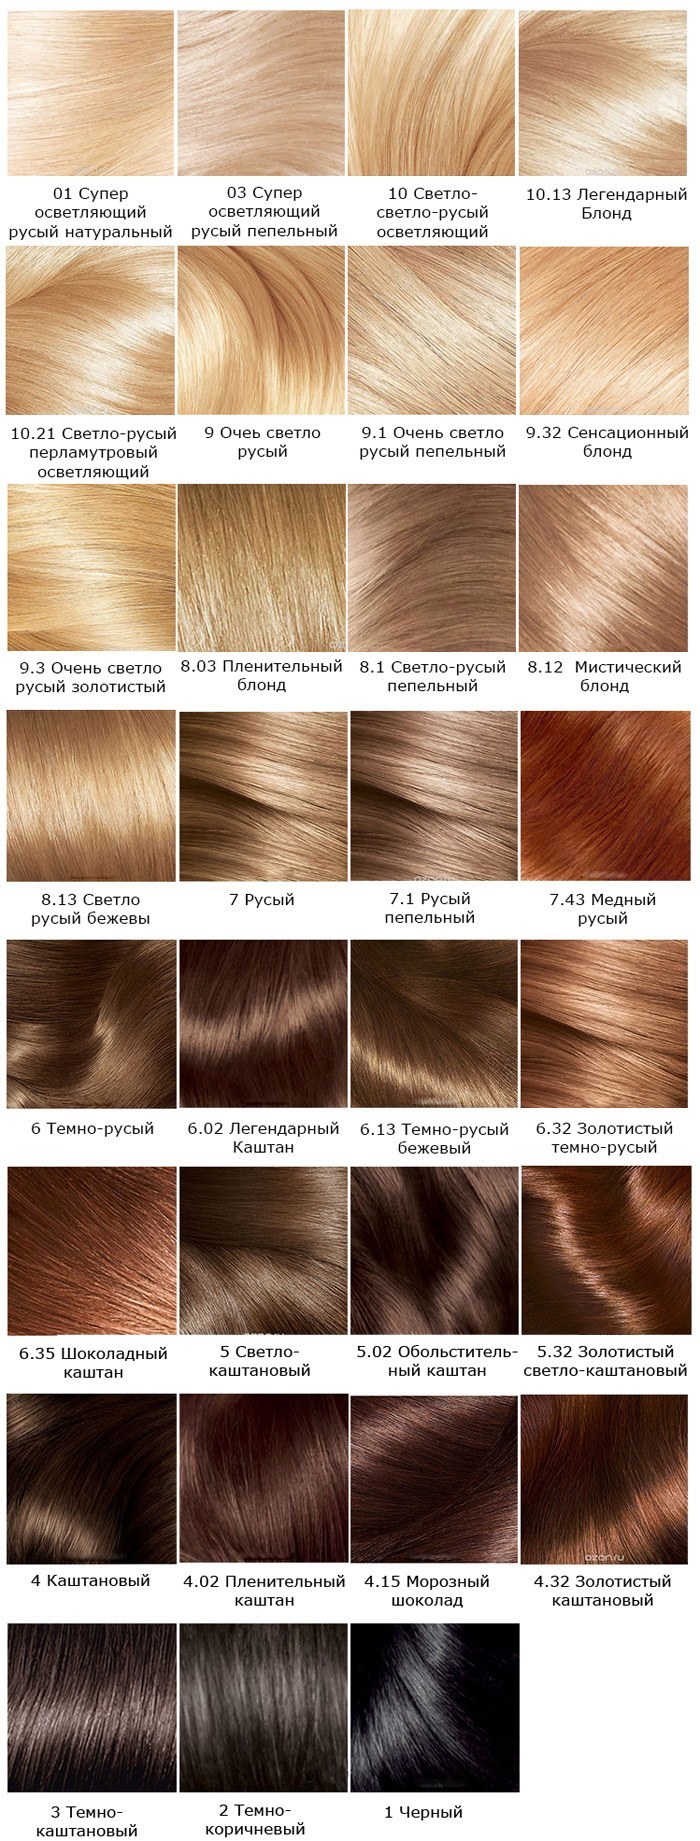 Фарба для волосся Лореаль Экселанс: палітра кольорів (фото)